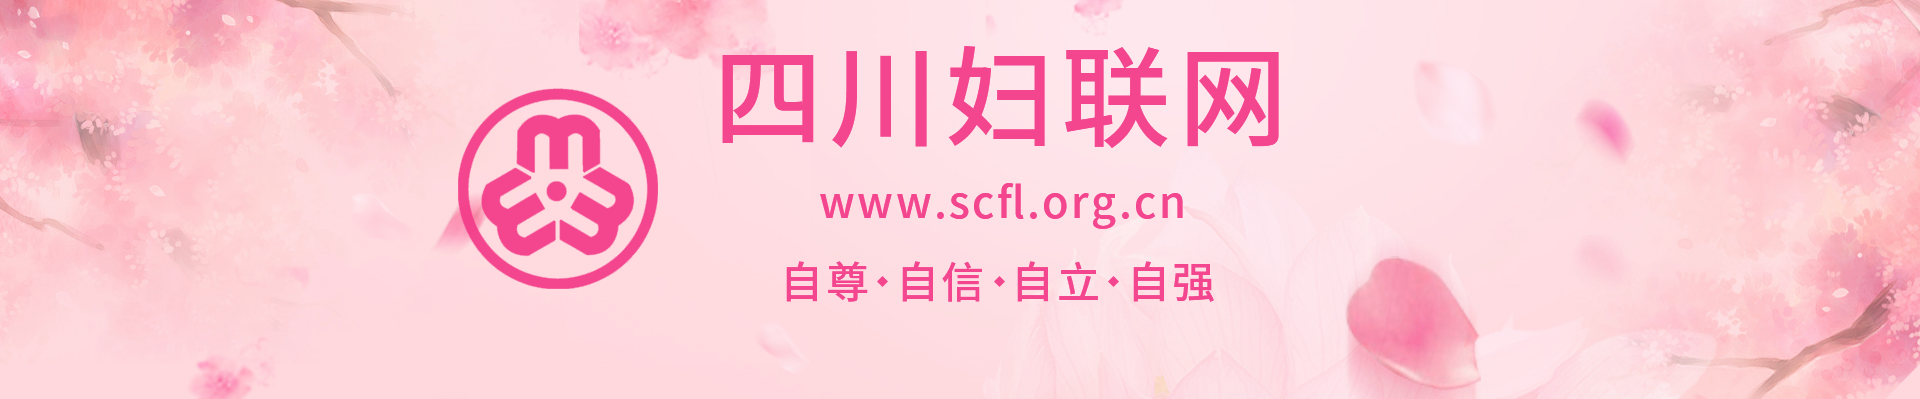 四川妇联网logo